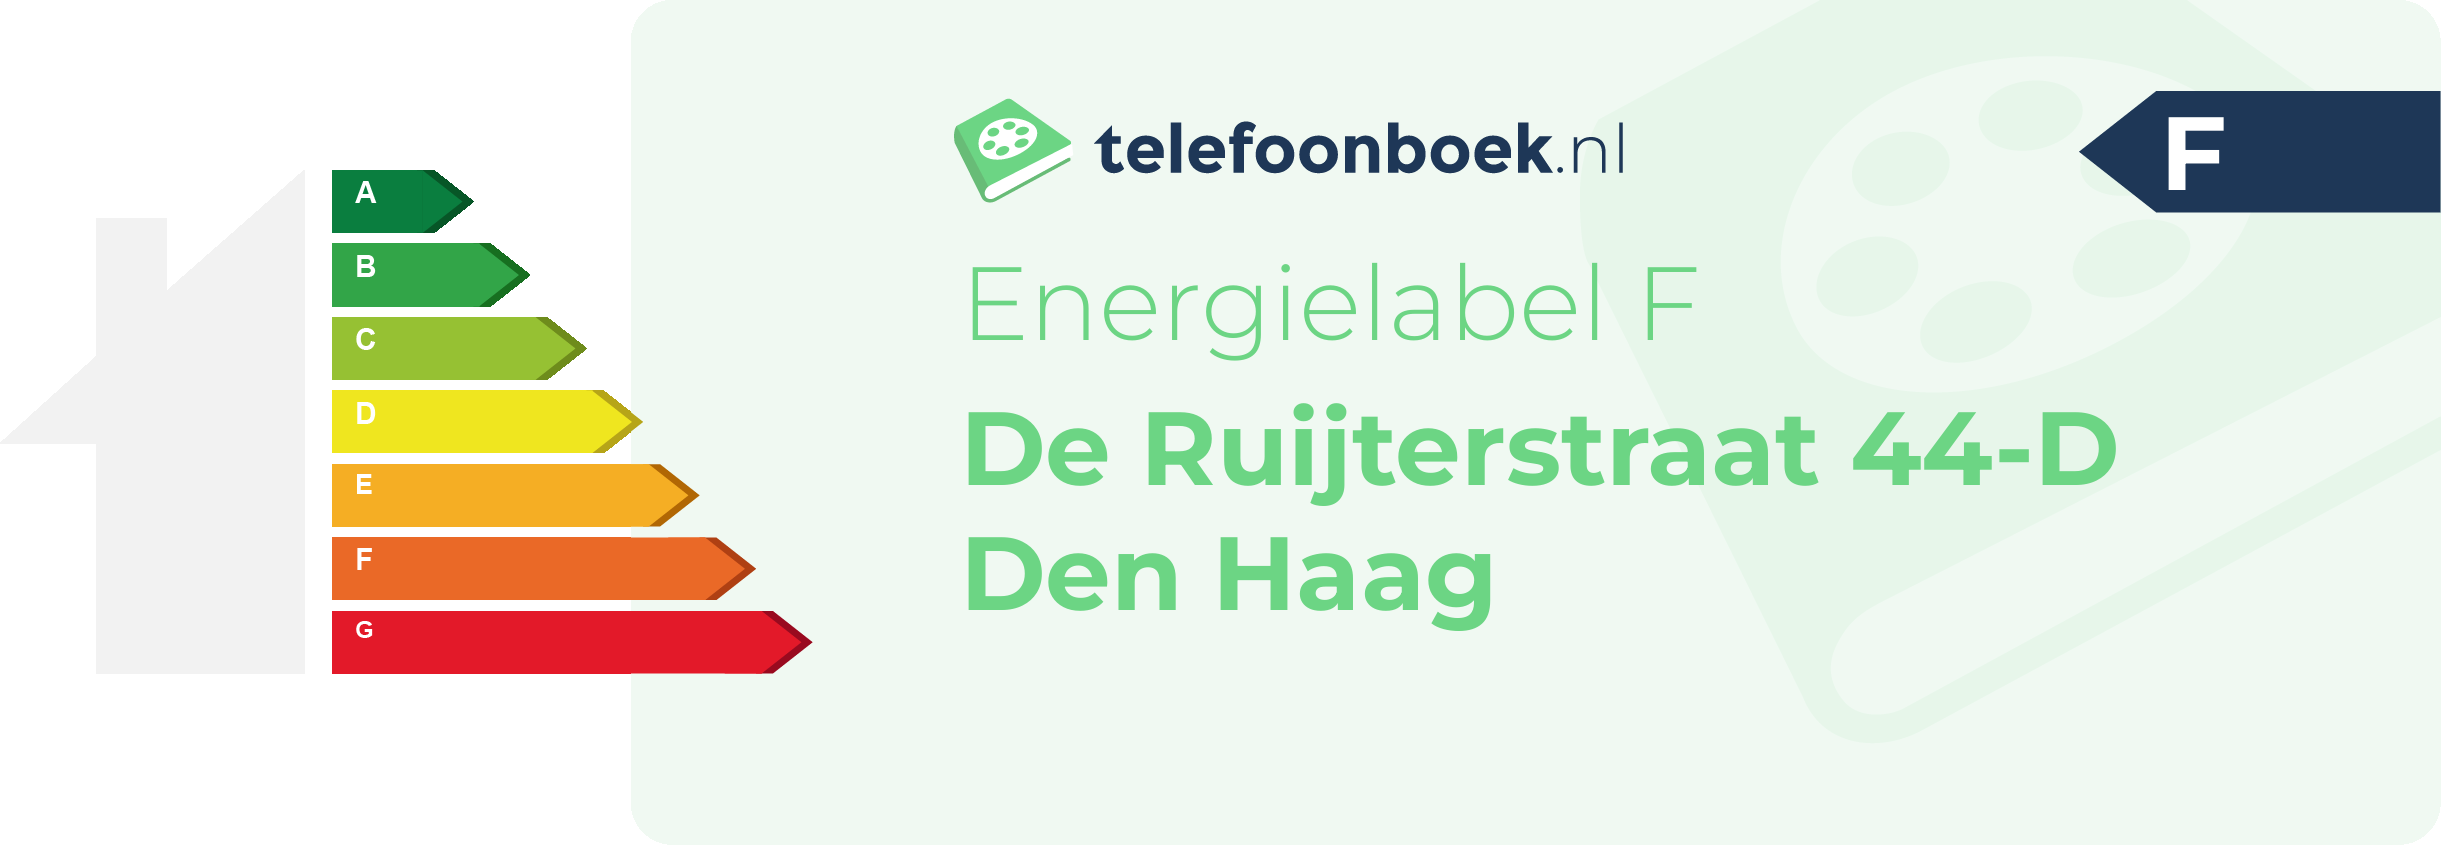 Energielabel De Ruijterstraat 44-D Den Haag